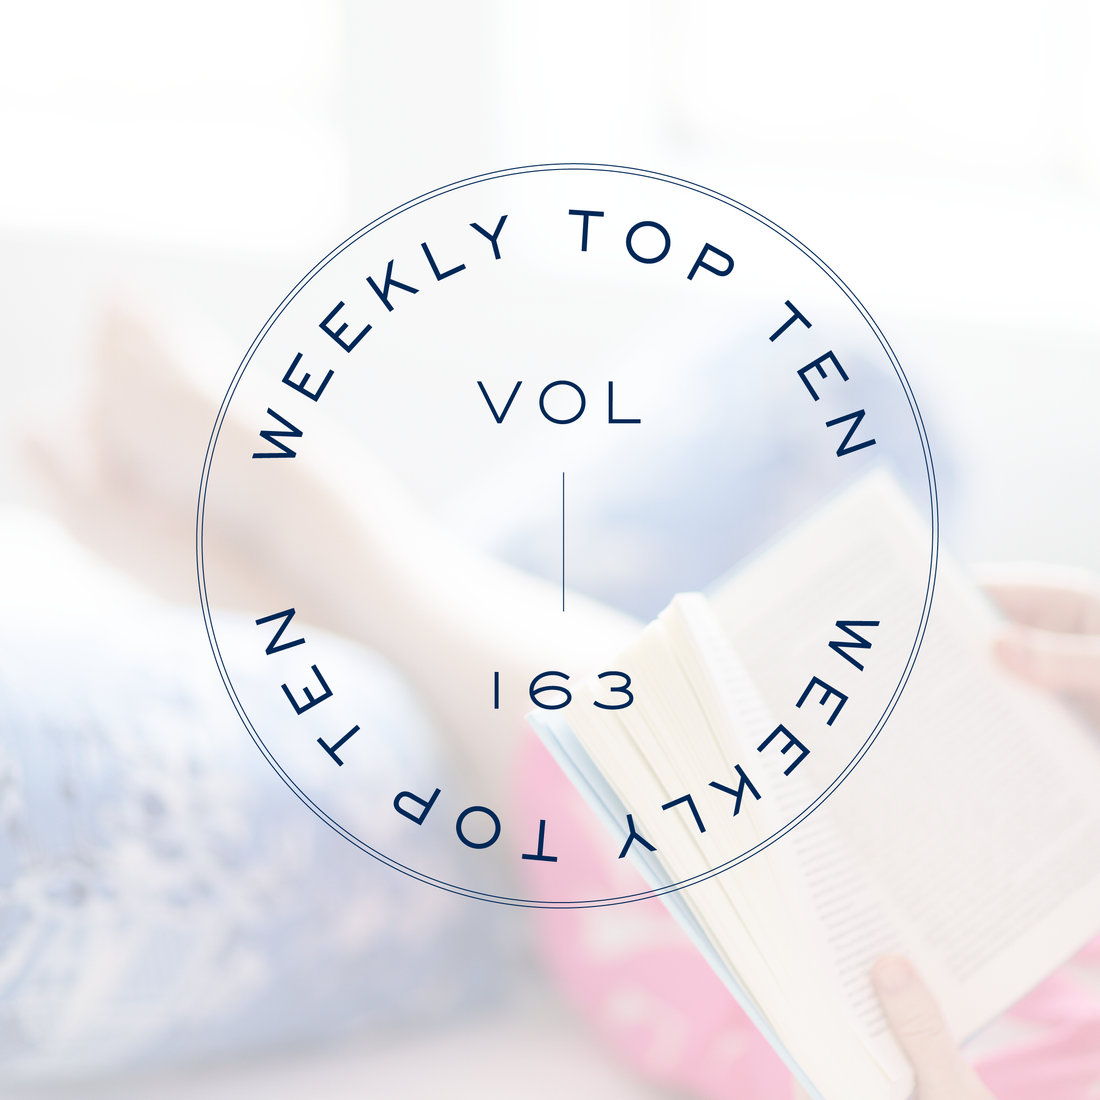 Weekly Top Ten: Vol. 163